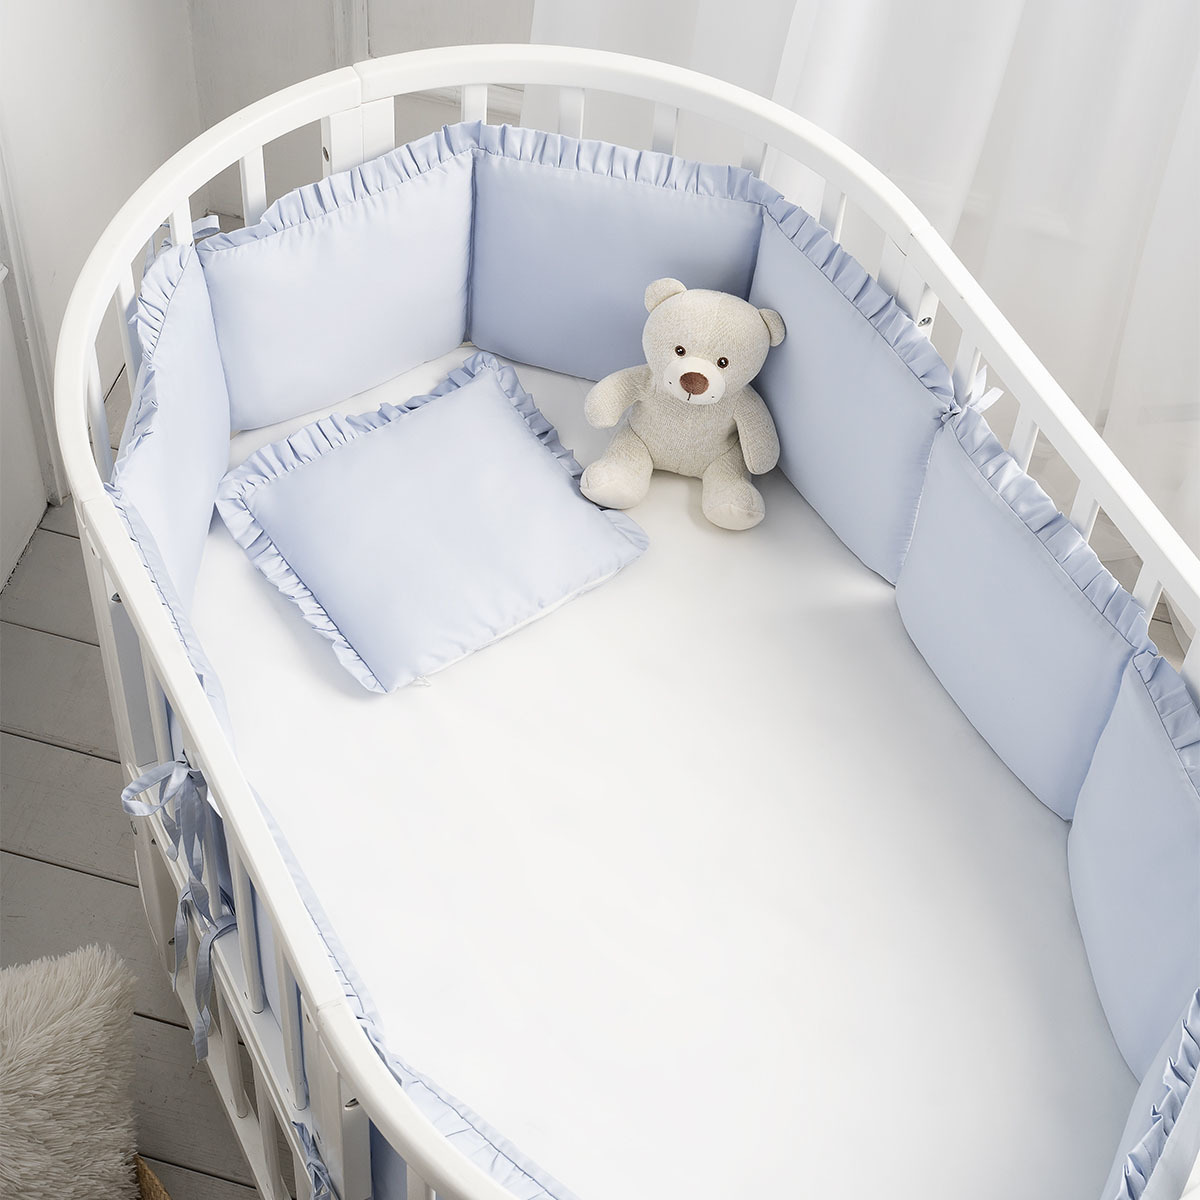 Защита для дет.кроватки(бампер)